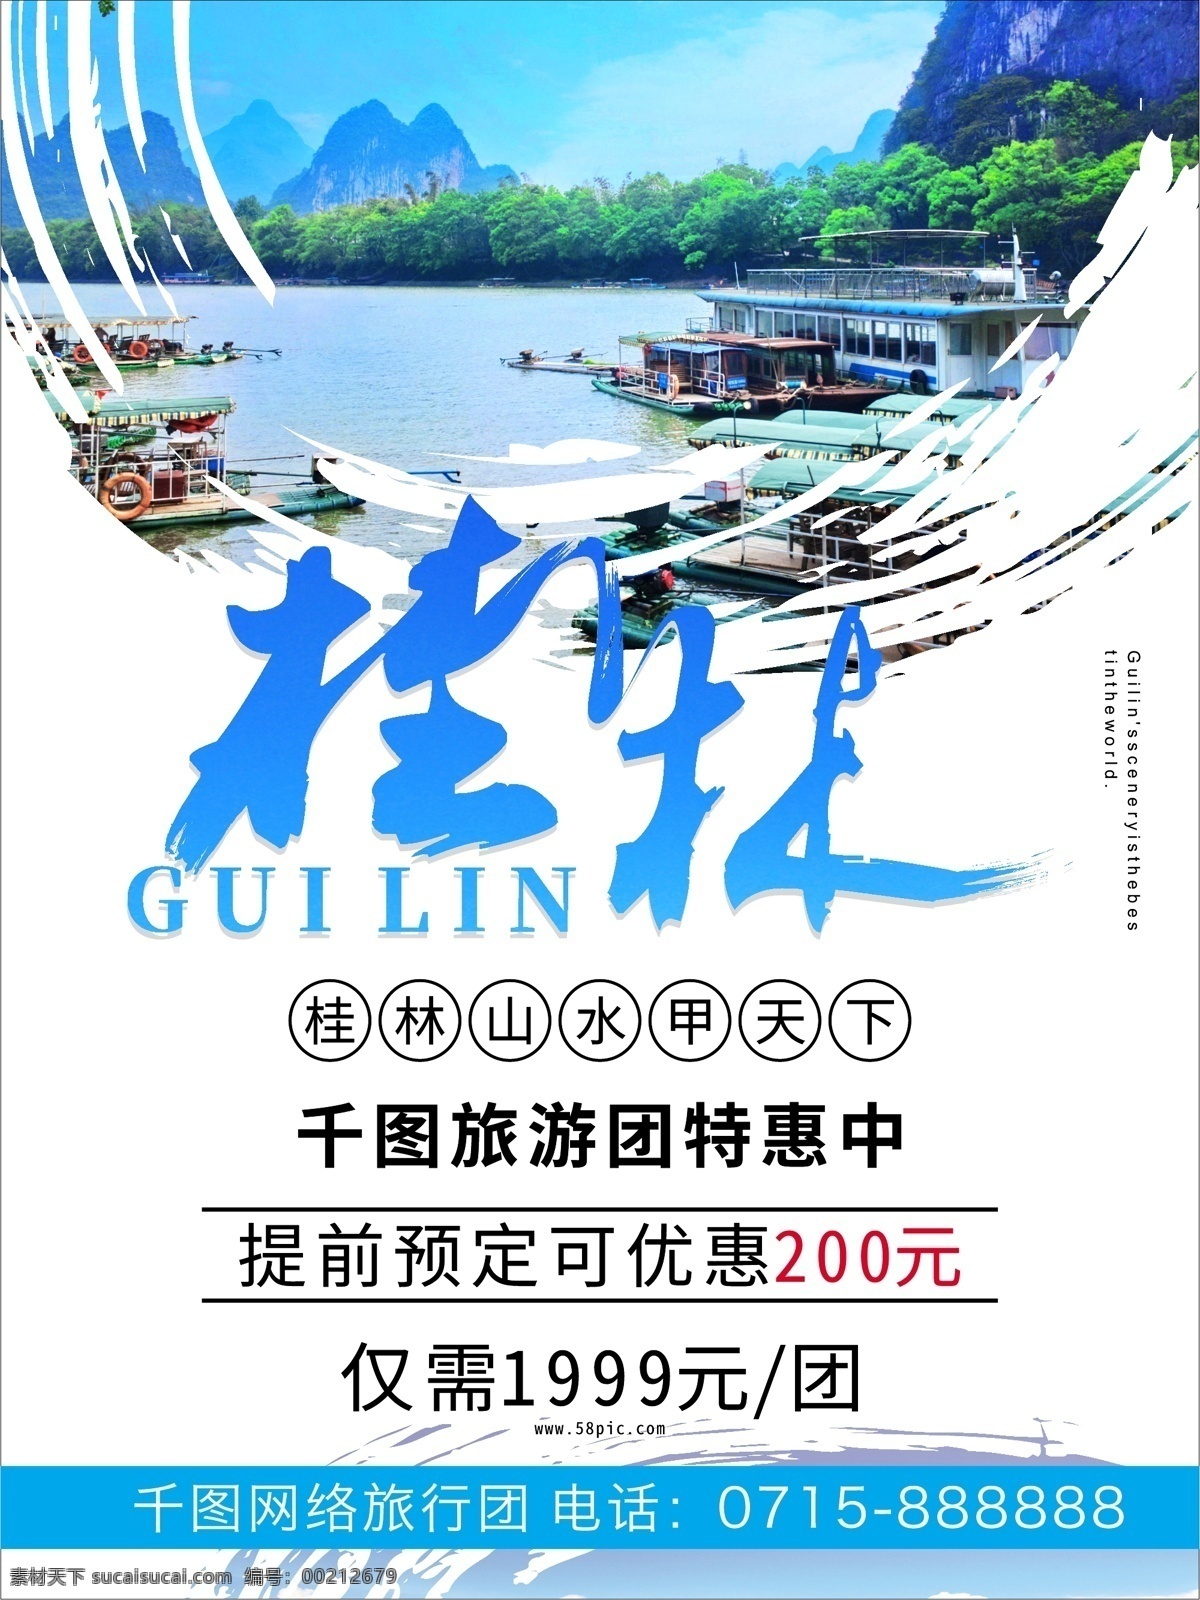 大气 字体 桂林旅游 海报 桂林 旅游海报 旅游促销海报 促销海报 促销 旅游